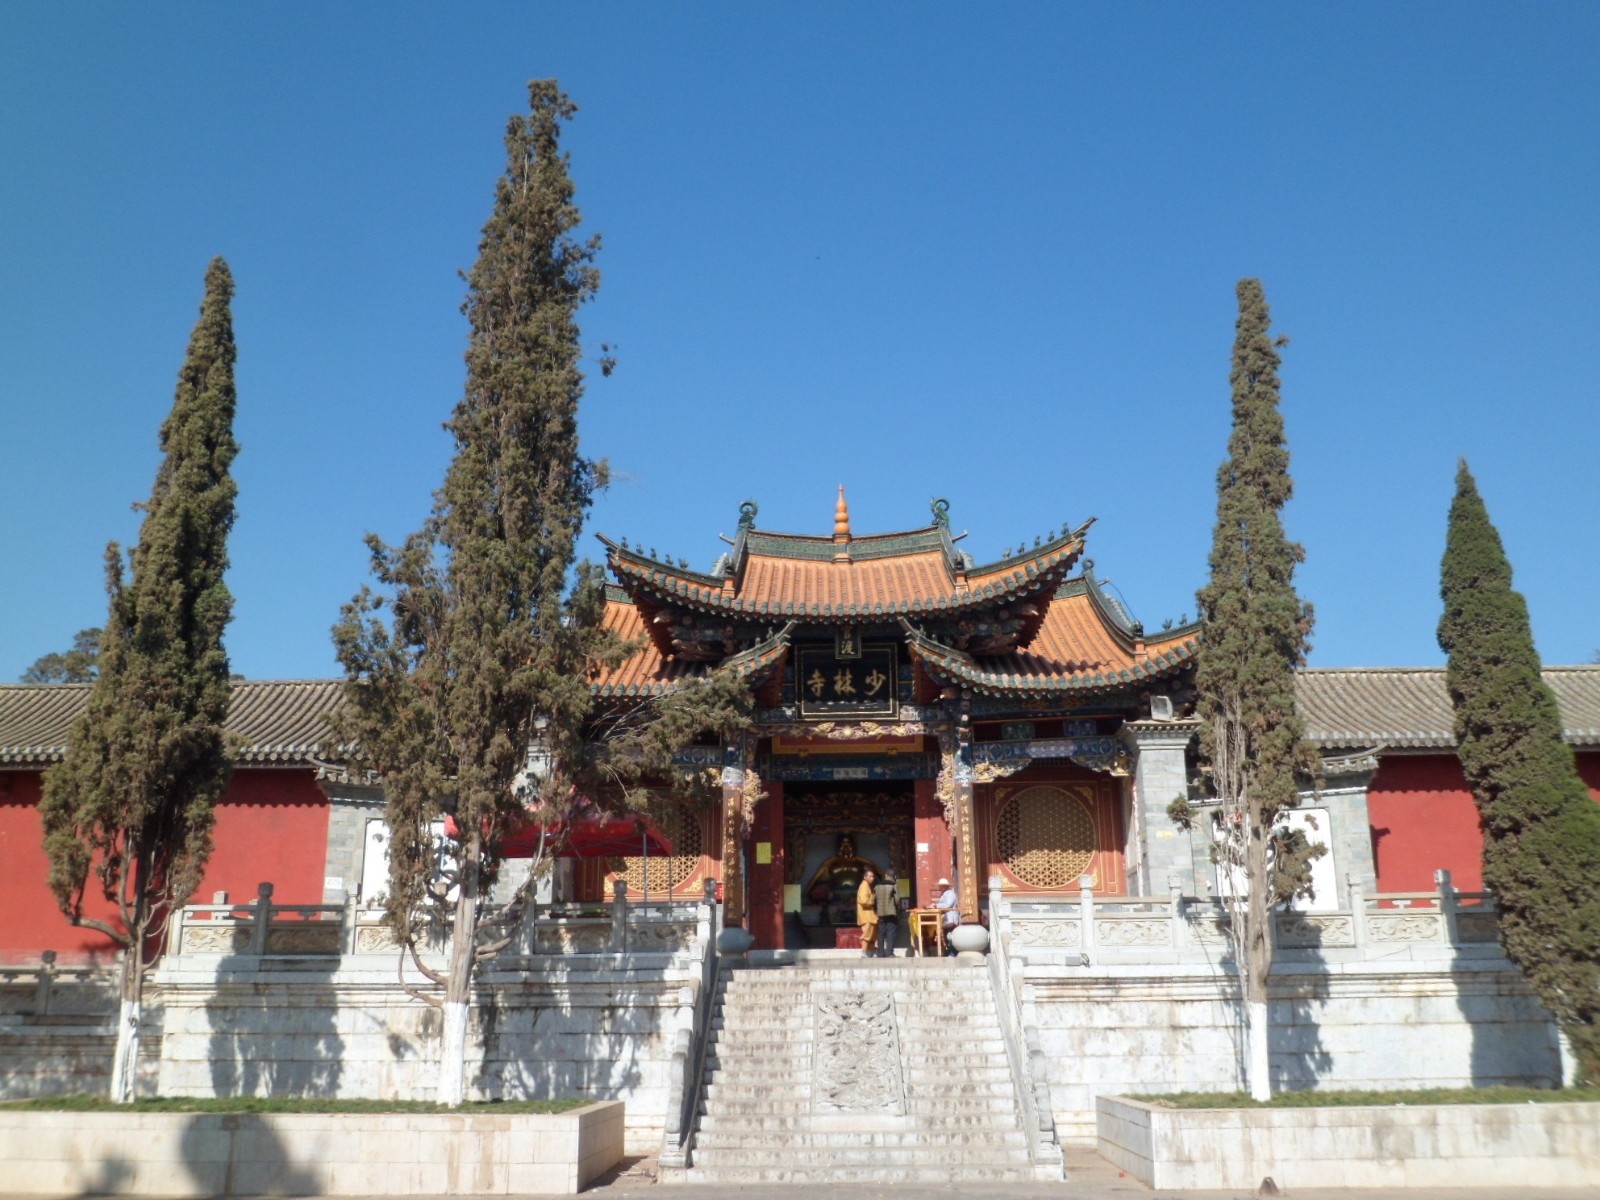 Shaolin Temple in Kunming Guandu Ancient Town